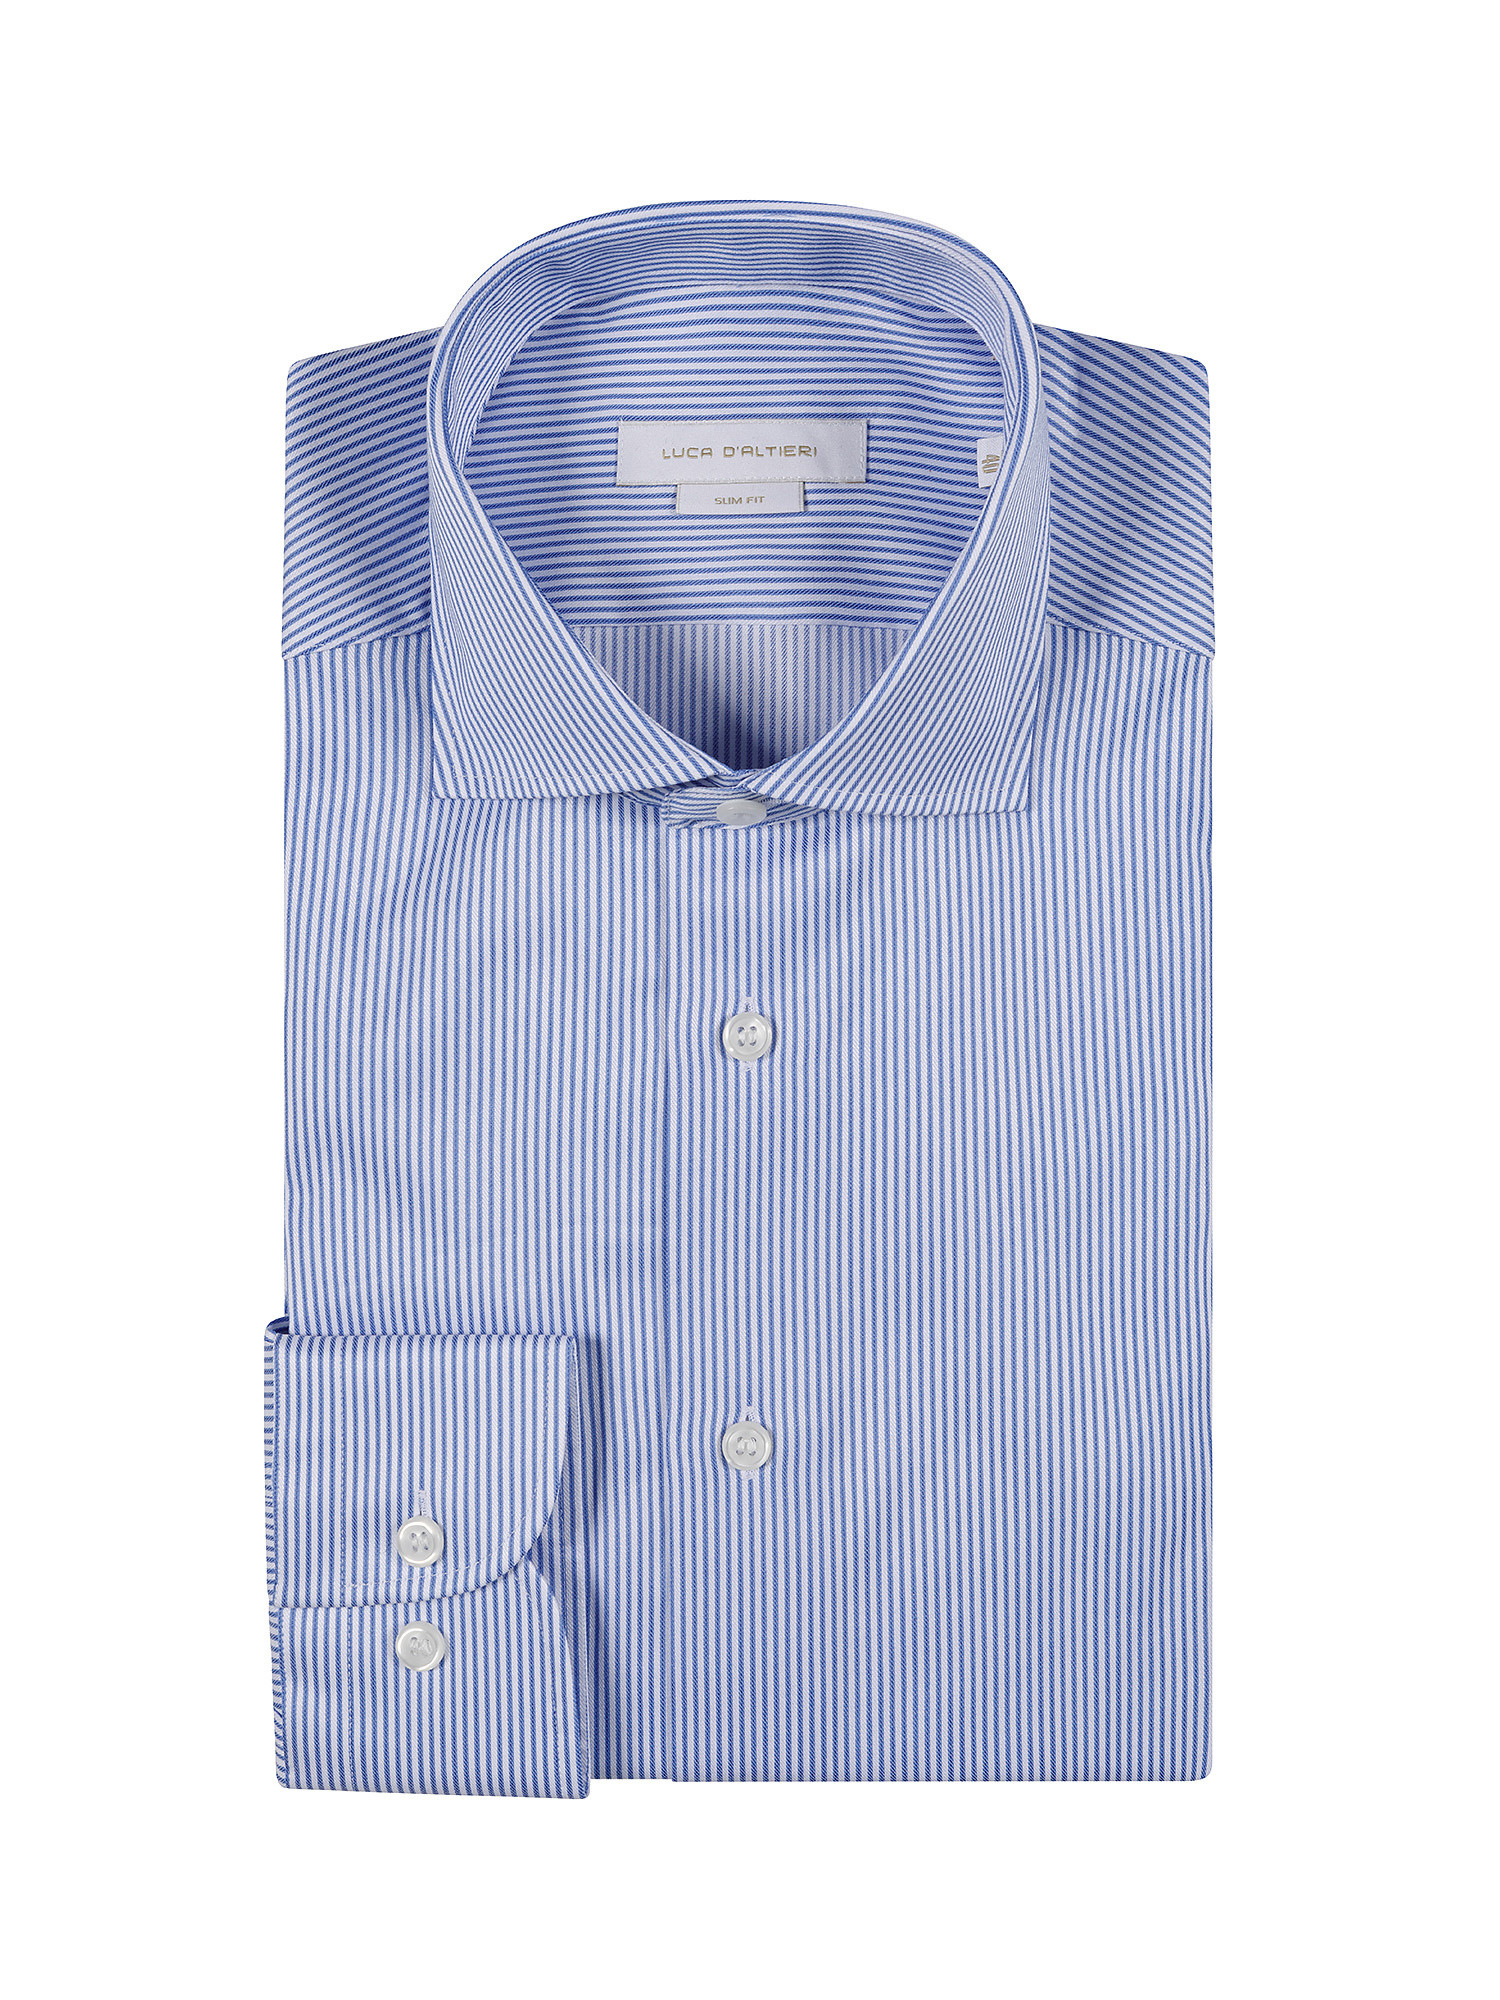 Camicia slim fit twill di cotone, Azzurro, large image number 2